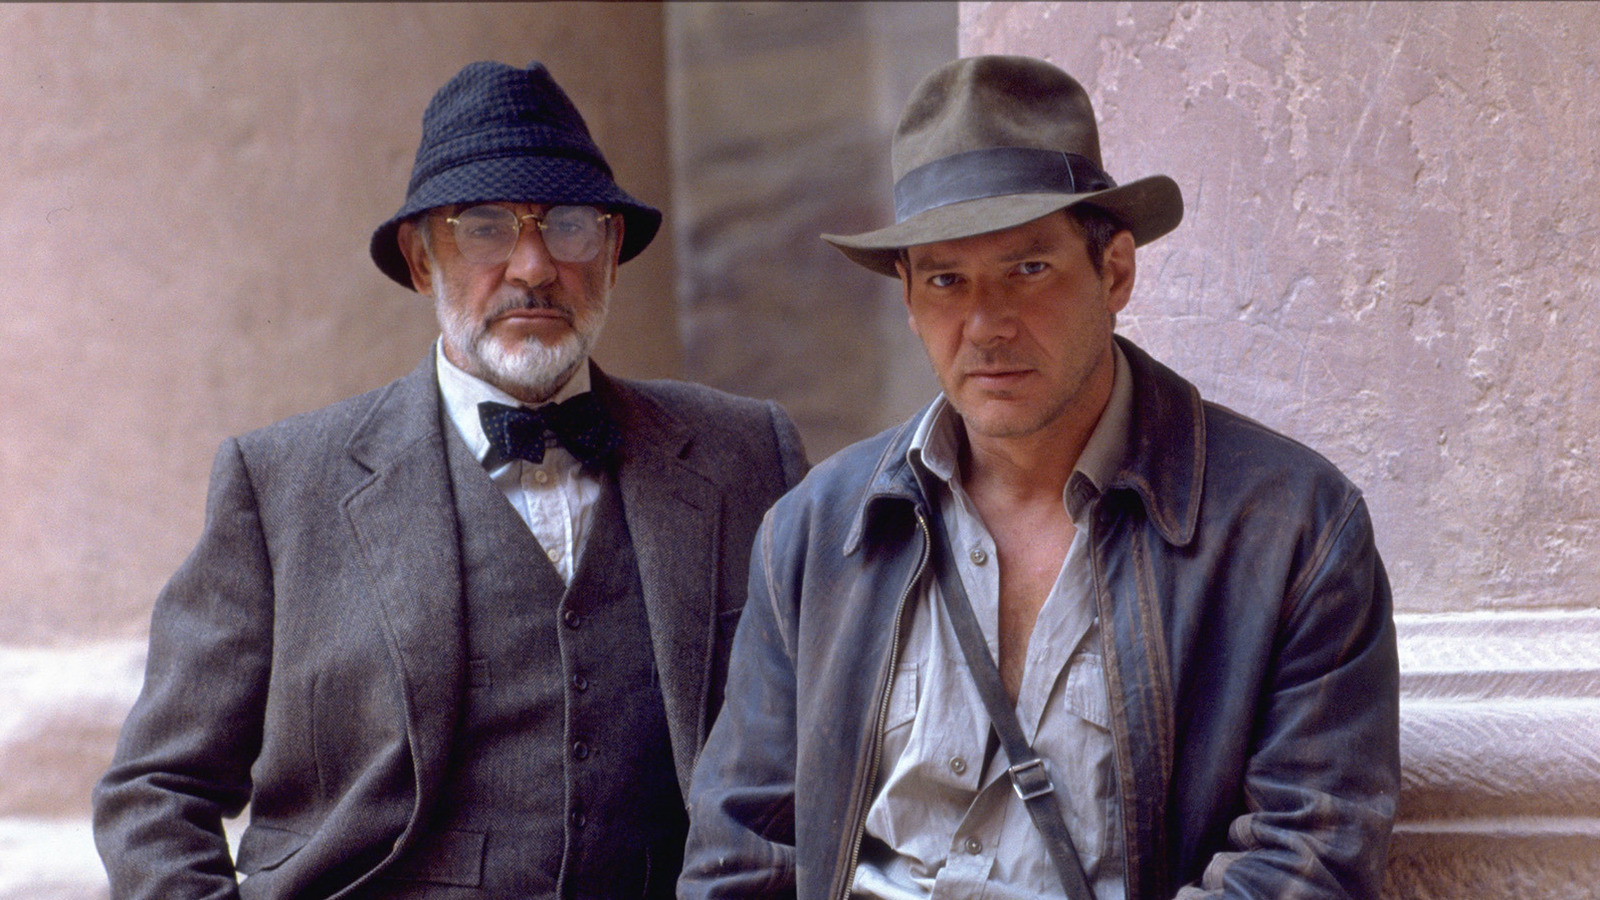 Indiana Jones e l'ultima crociata, Harrison Ford fa chiarezza sulla scena 'senza pantaloni' con Sean Connery